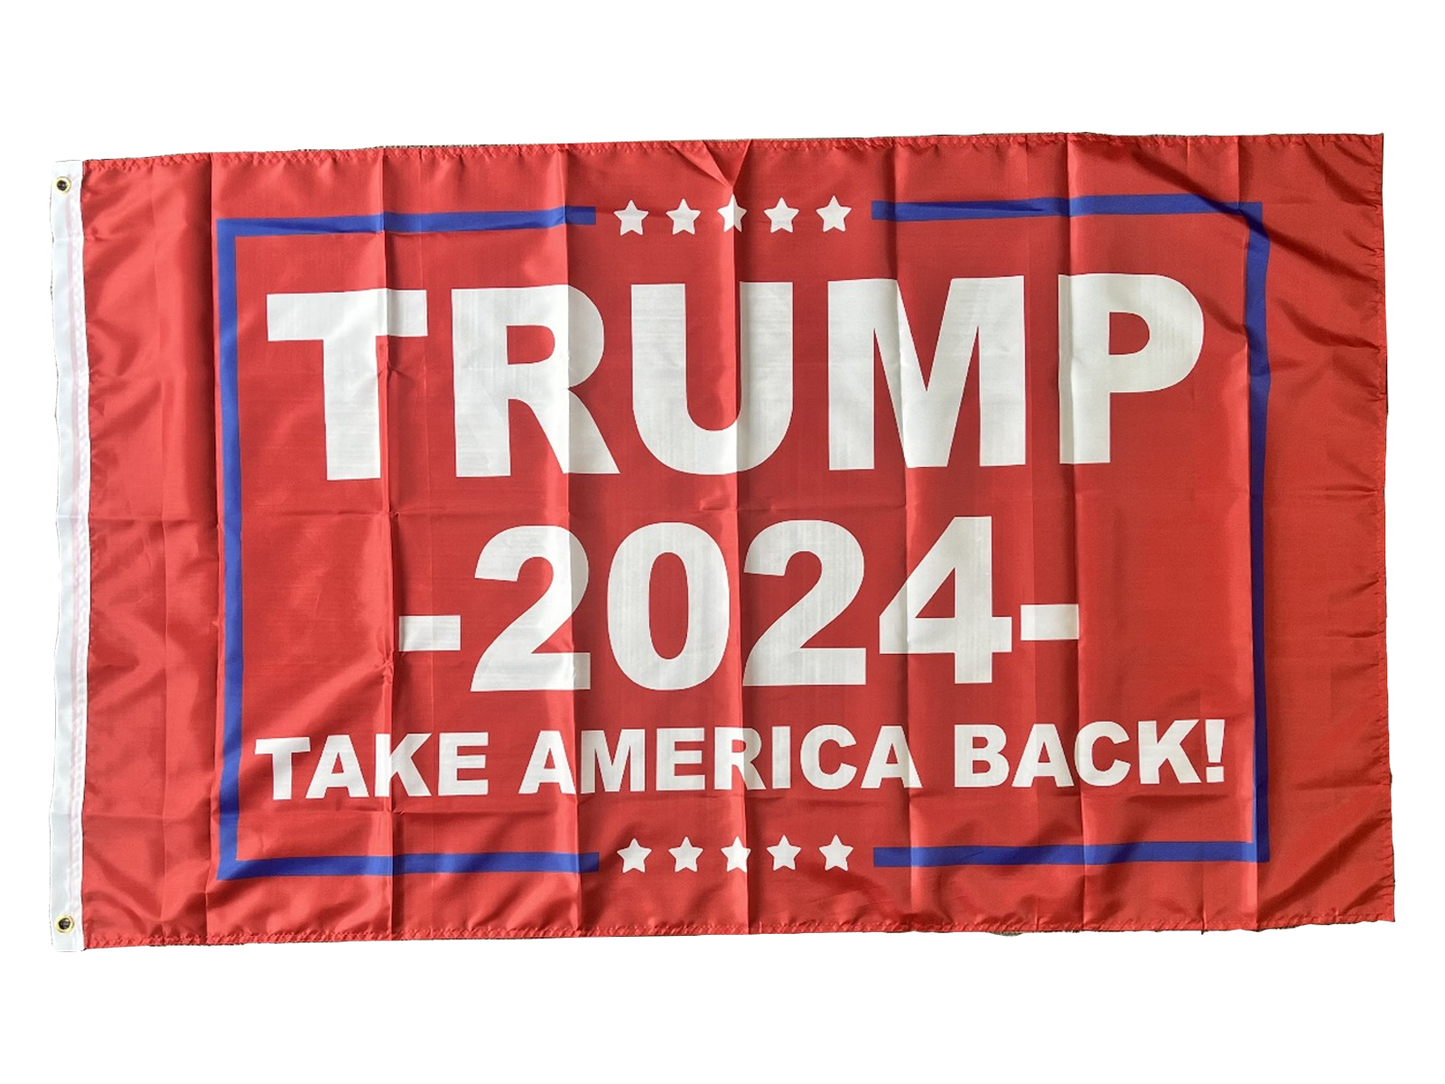 Trump 2024 "Take America Back" Flag